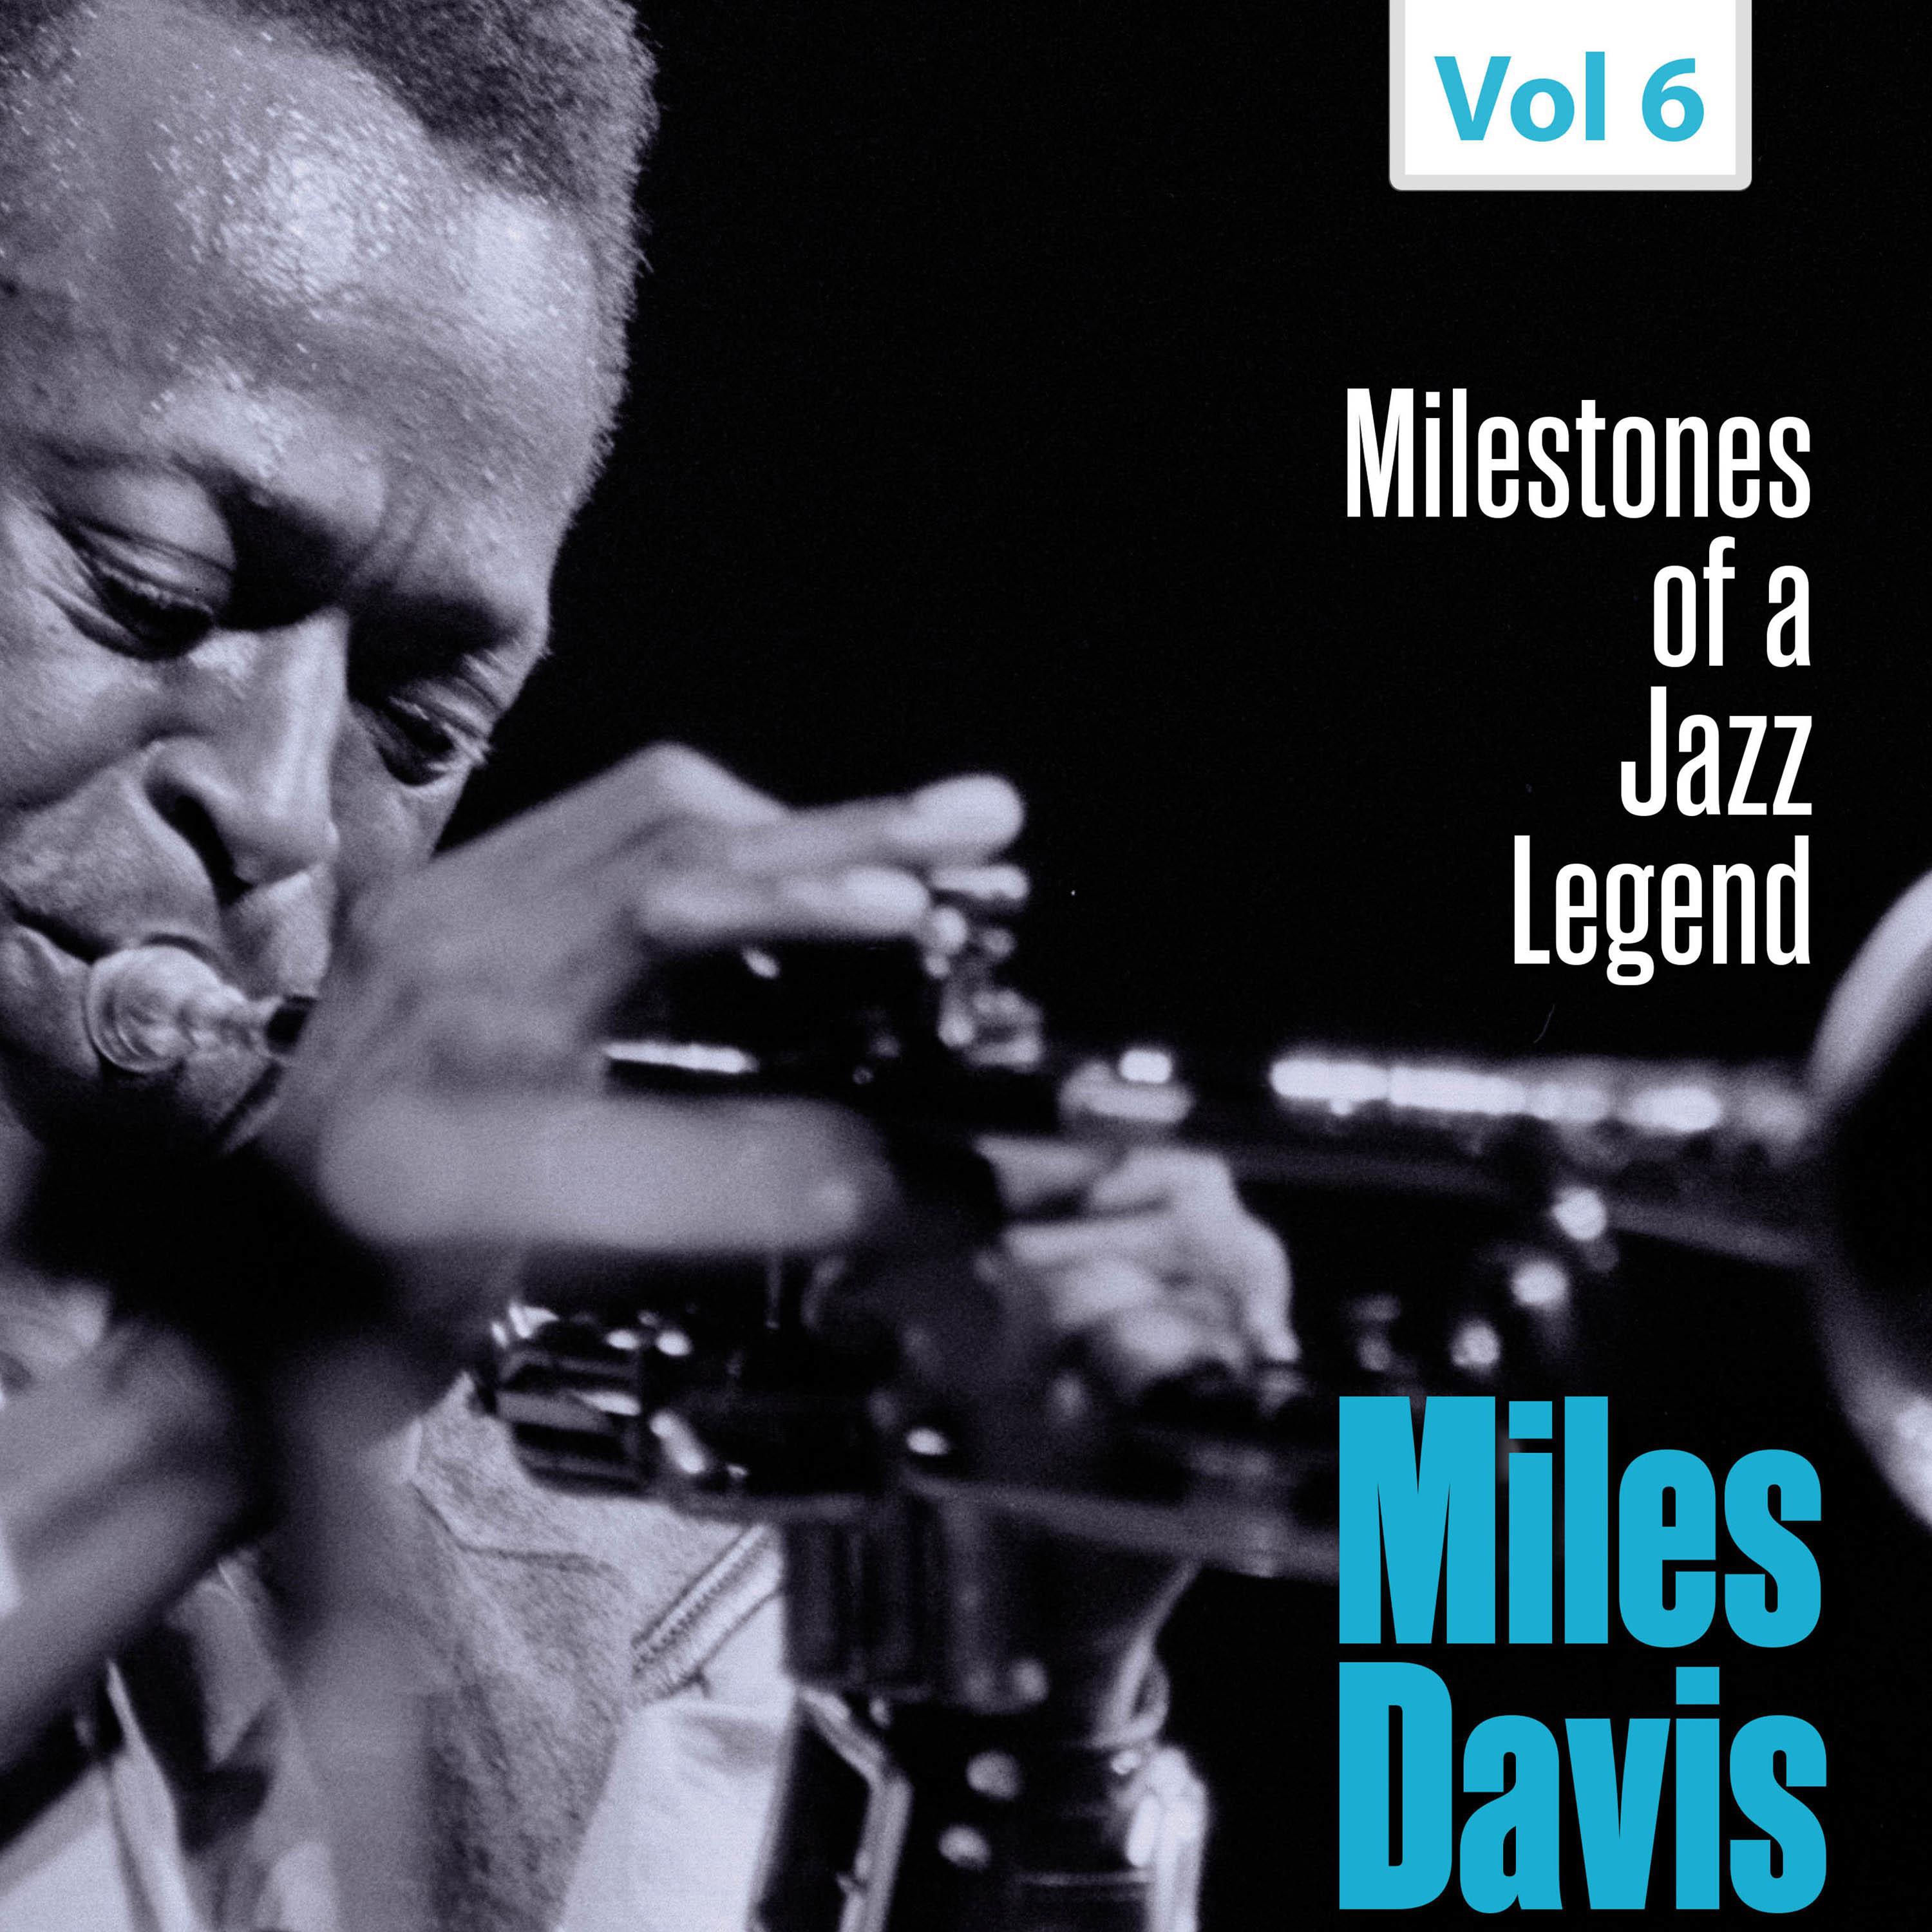 Milestones of a Jazz Legend - Miles Davis, Vol. 6